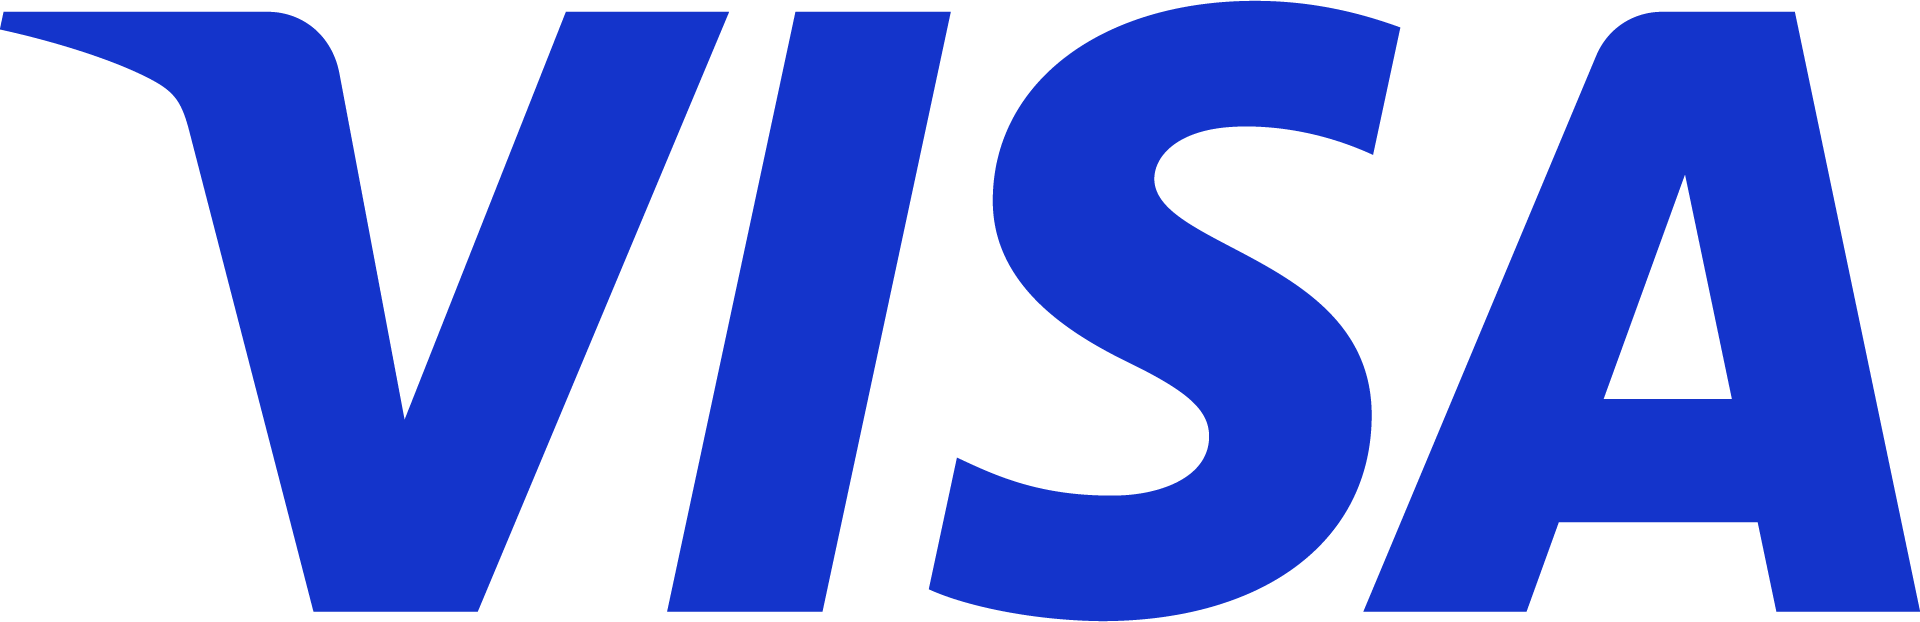 Visa log